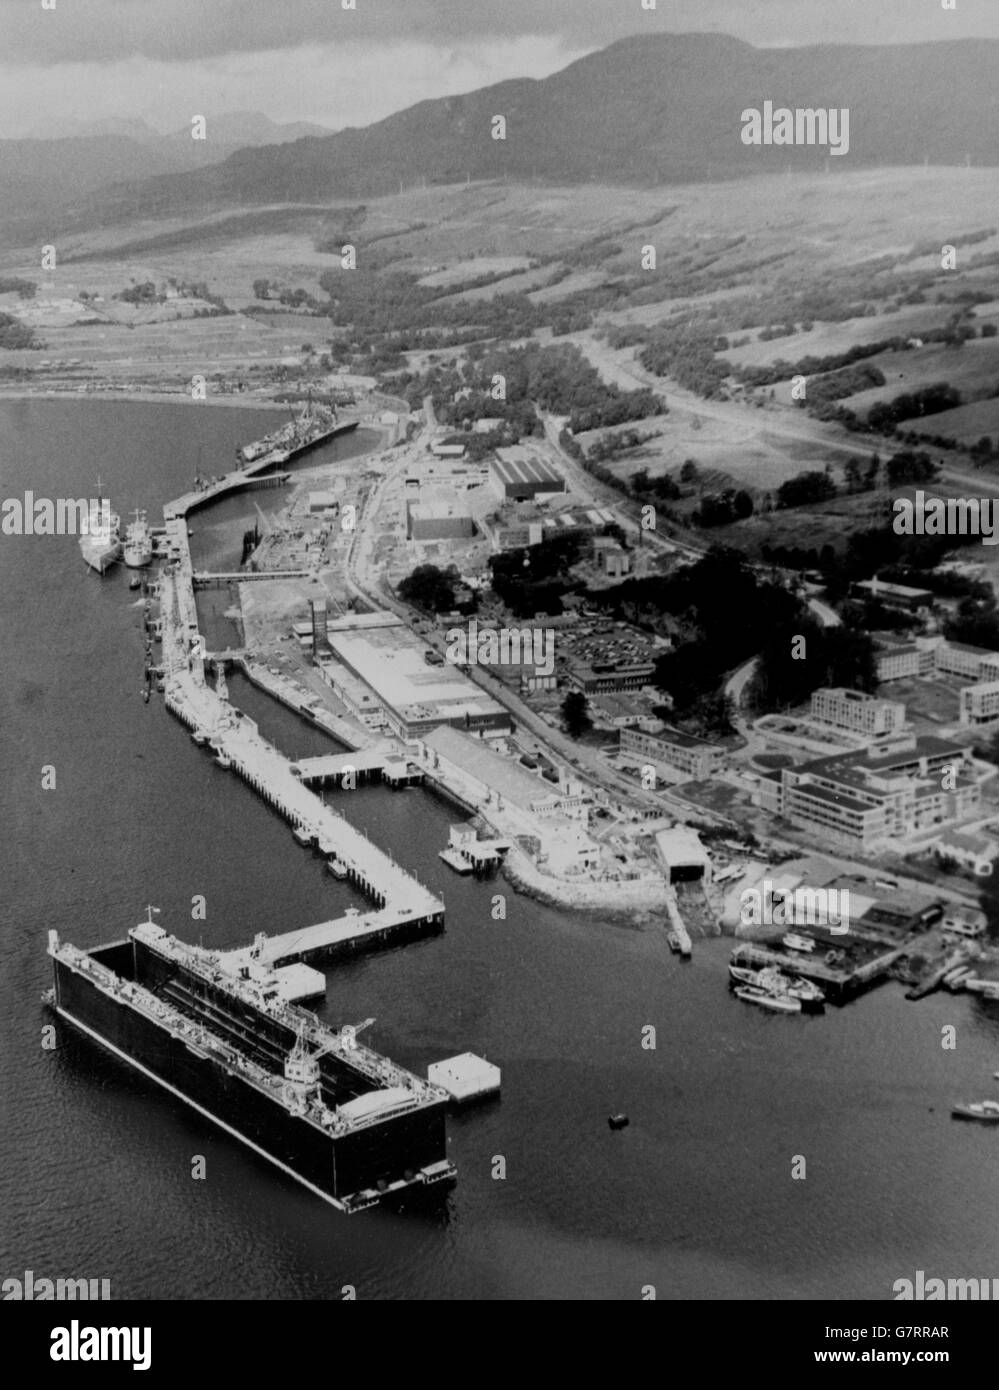 La base navale di Faslane è raffigurata dall'alto con il molo galleggiante AFD 60 visibile. Foto Stock